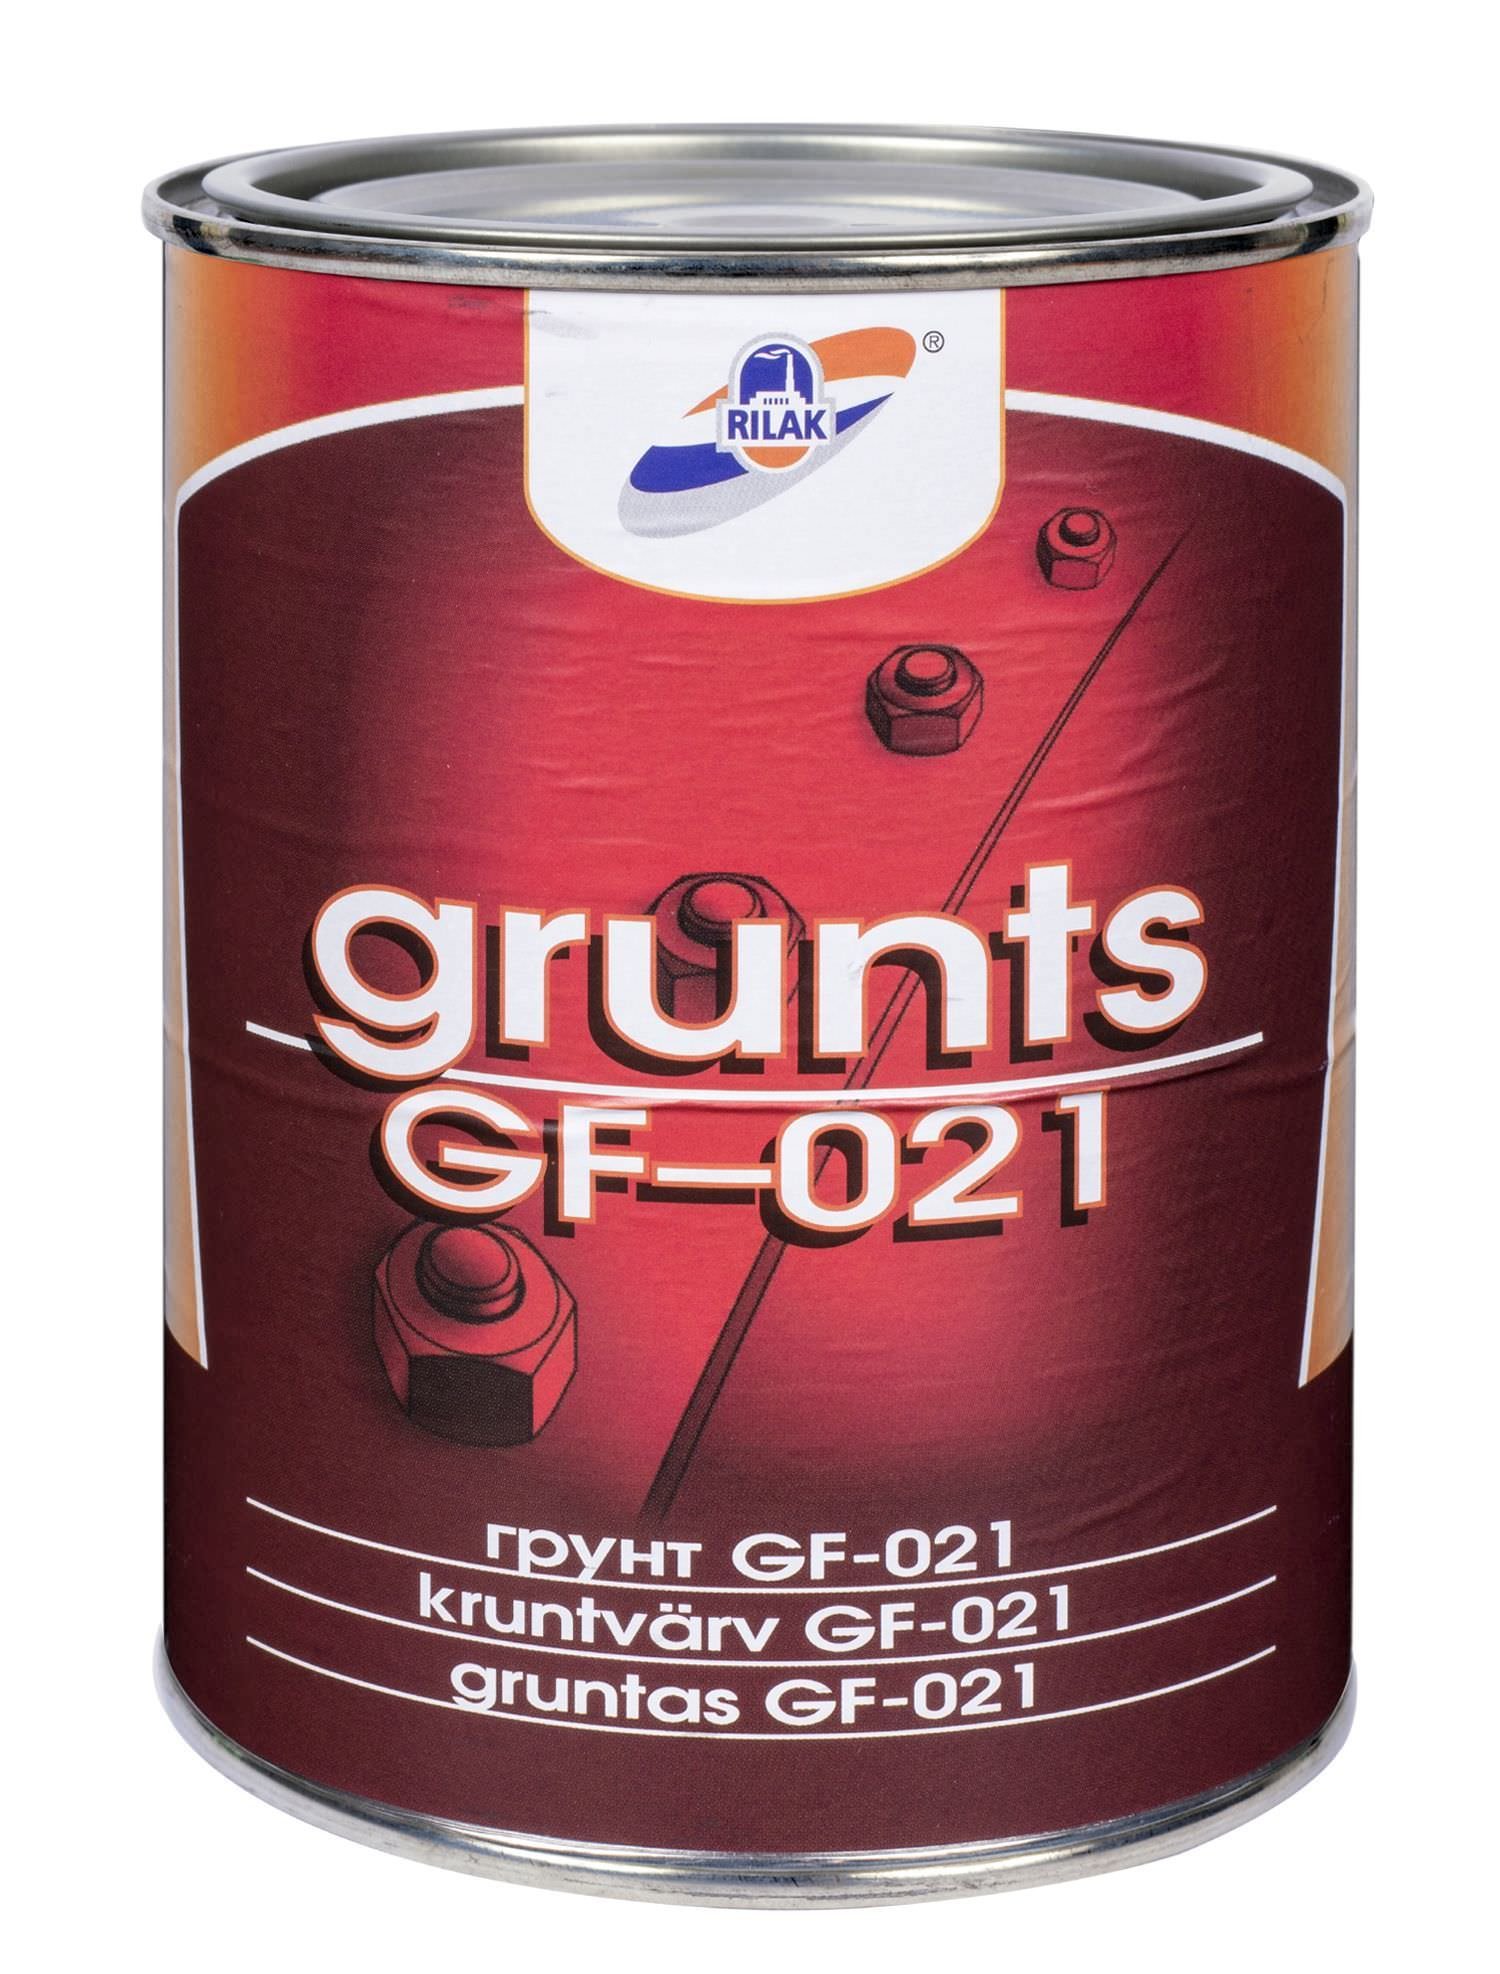 Metalo gruntas RILAK GF-021, raudonai rudos sp., 900 ml